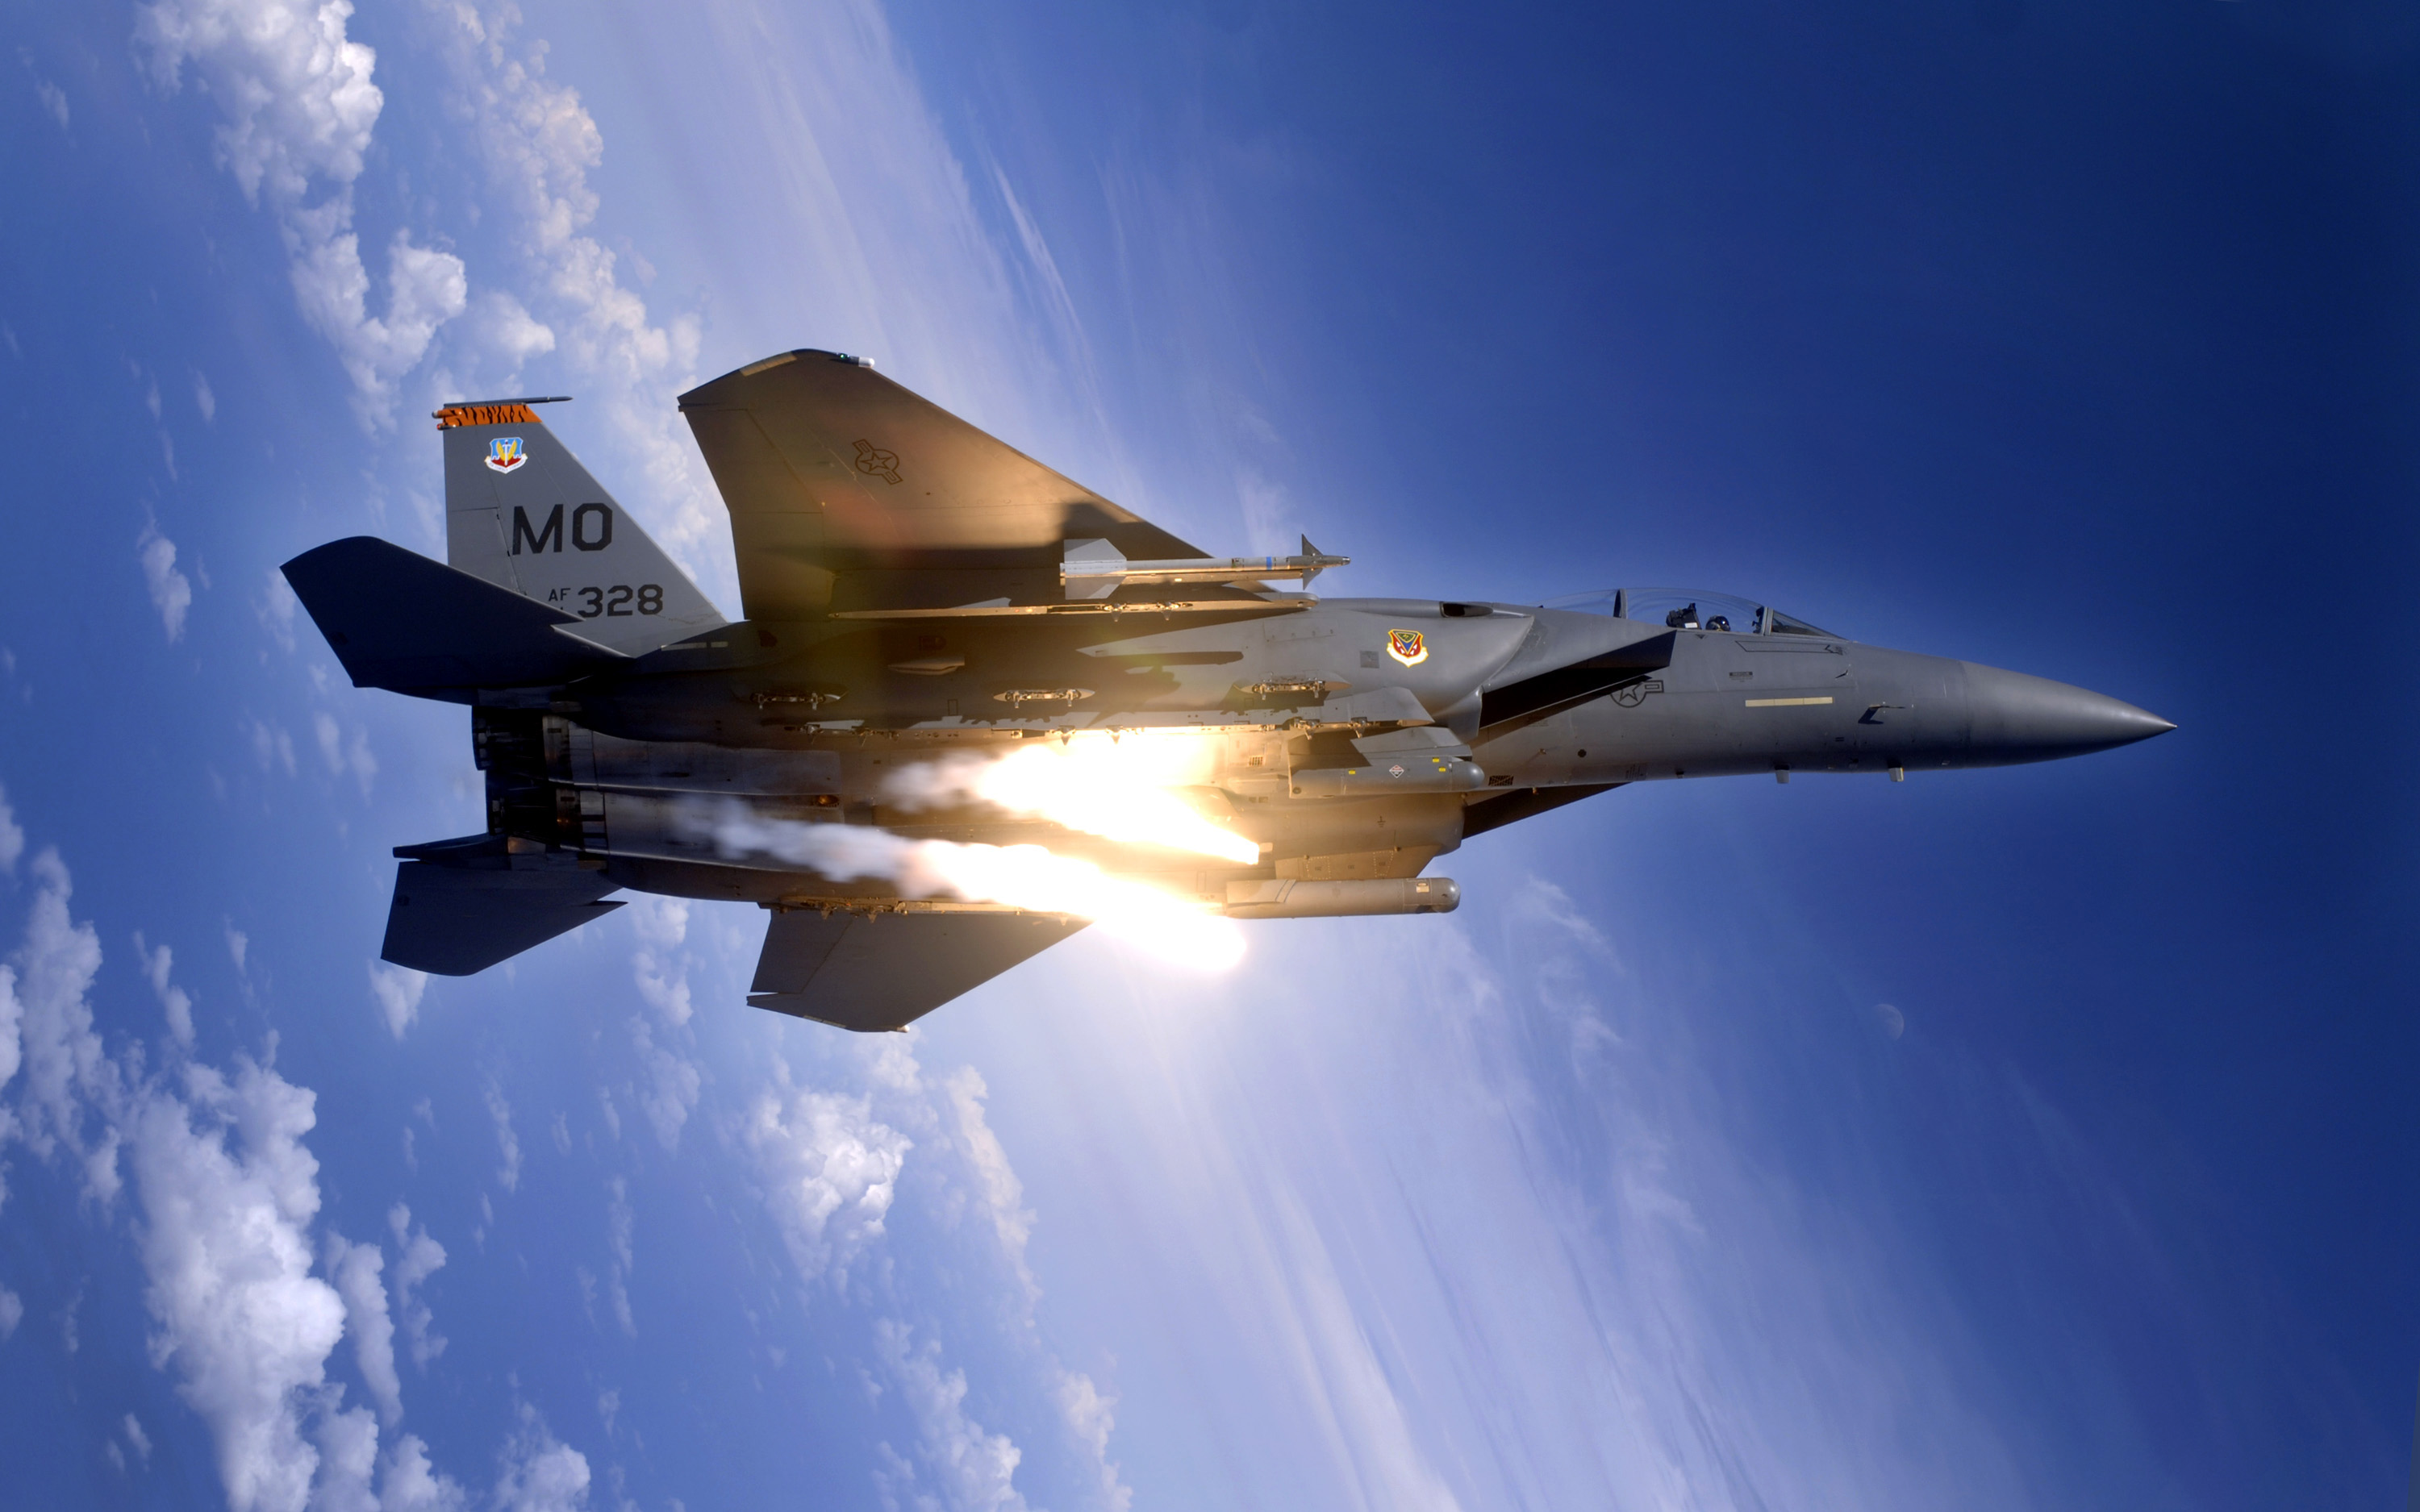 flares, F-15 Eagle, fighters - desktop wallpaper